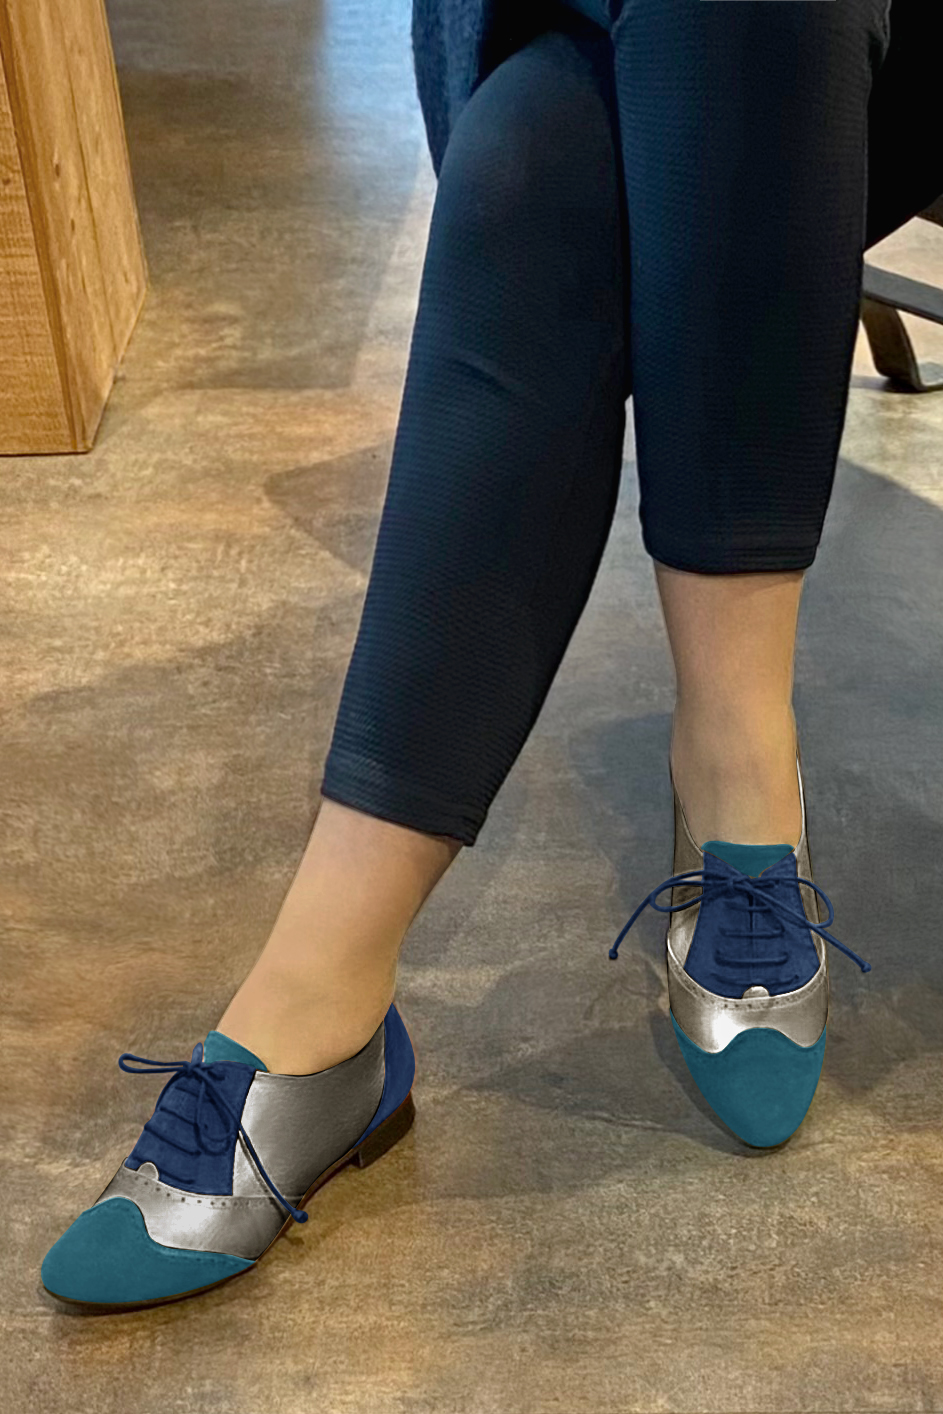 Chaussure femme à lacets : Derby original couleur bleu canard et marron taupe. Bout rond. Semelle cuir talon plat. Vue porté - Florence KOOIJMAN